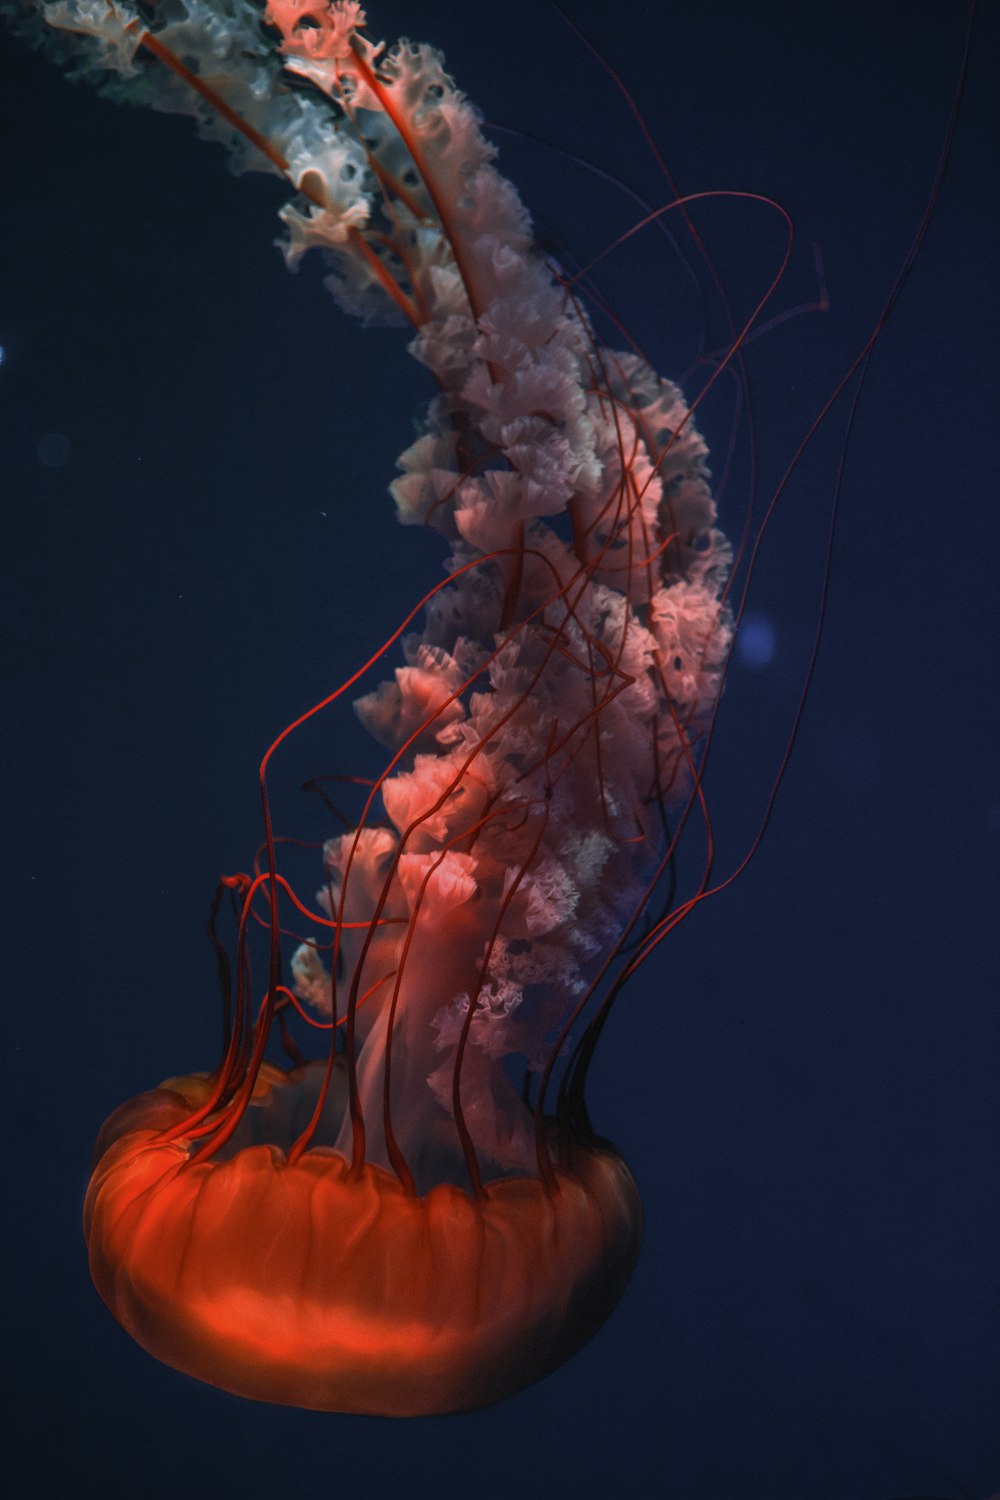 jellyfish under water